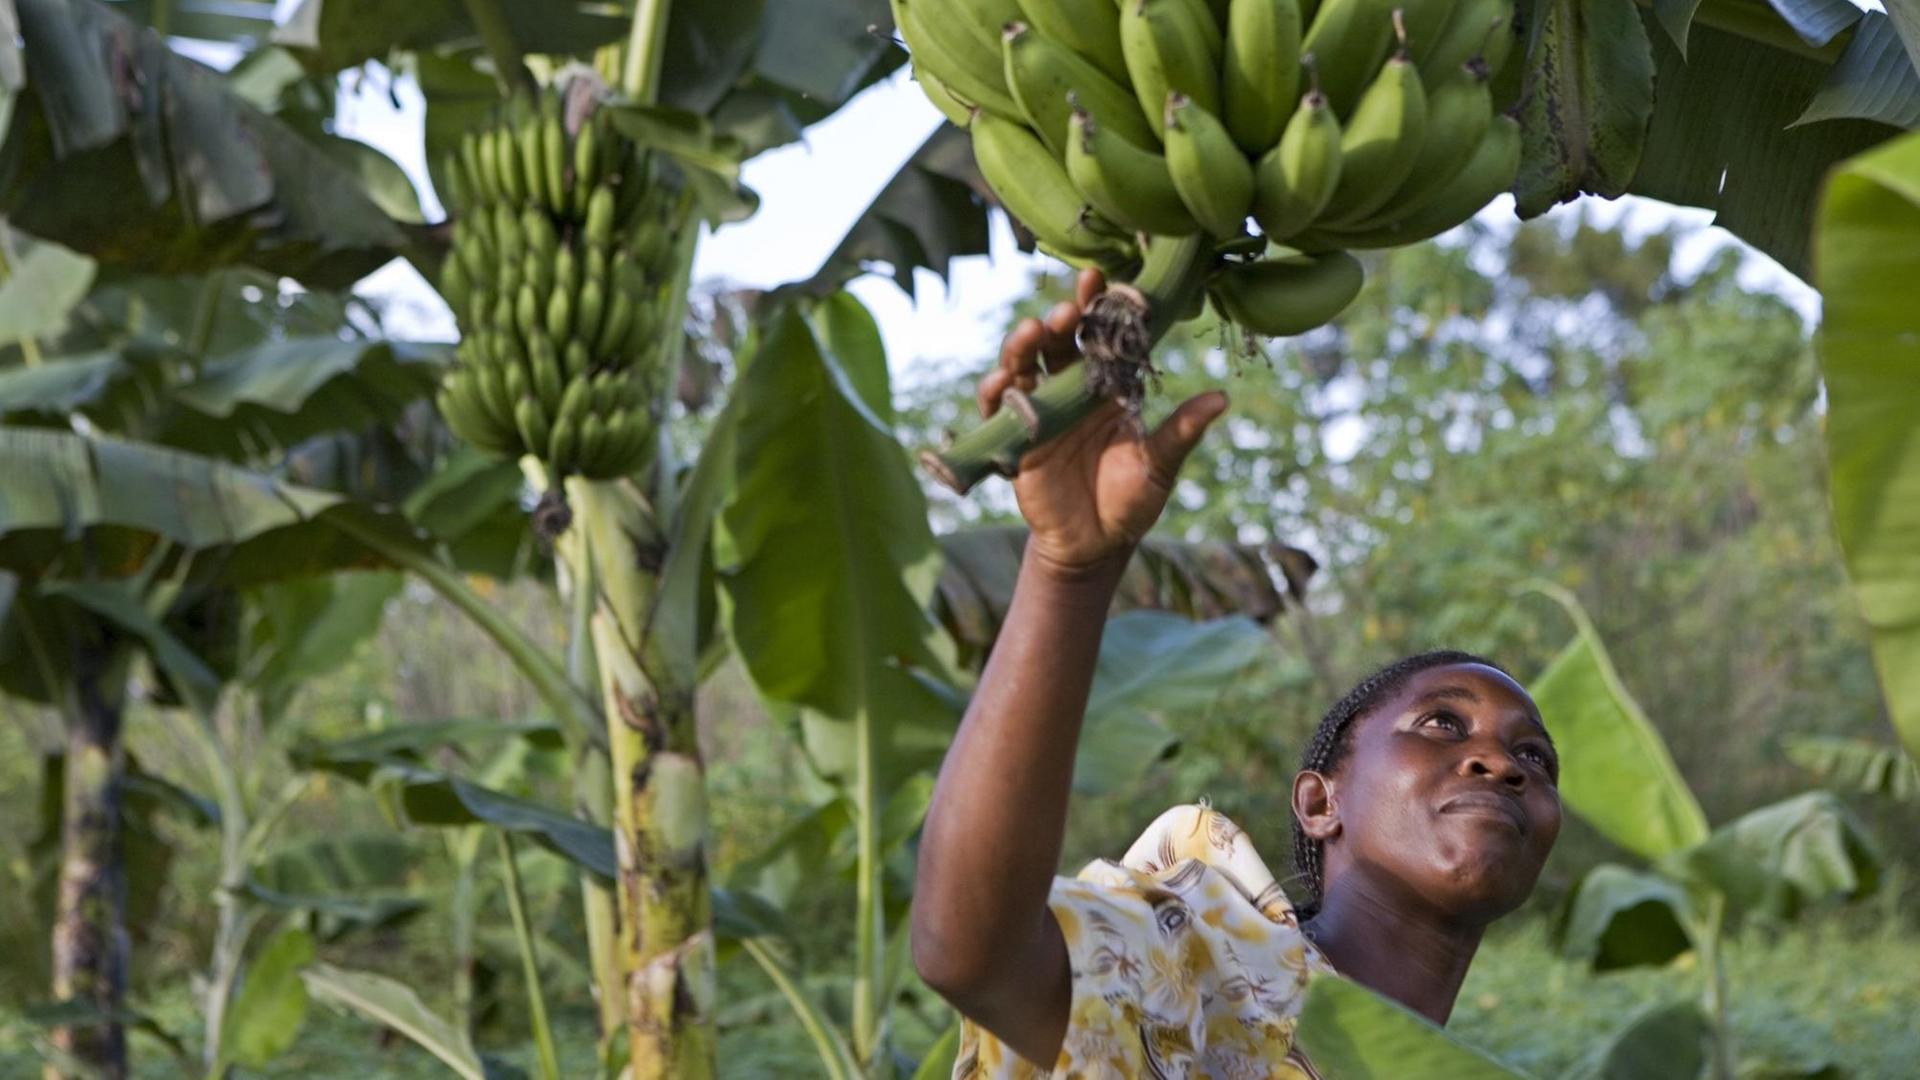 Beatrice Sebyala untersucht die Bananen-Ernte auf ihrem Bauernhof.